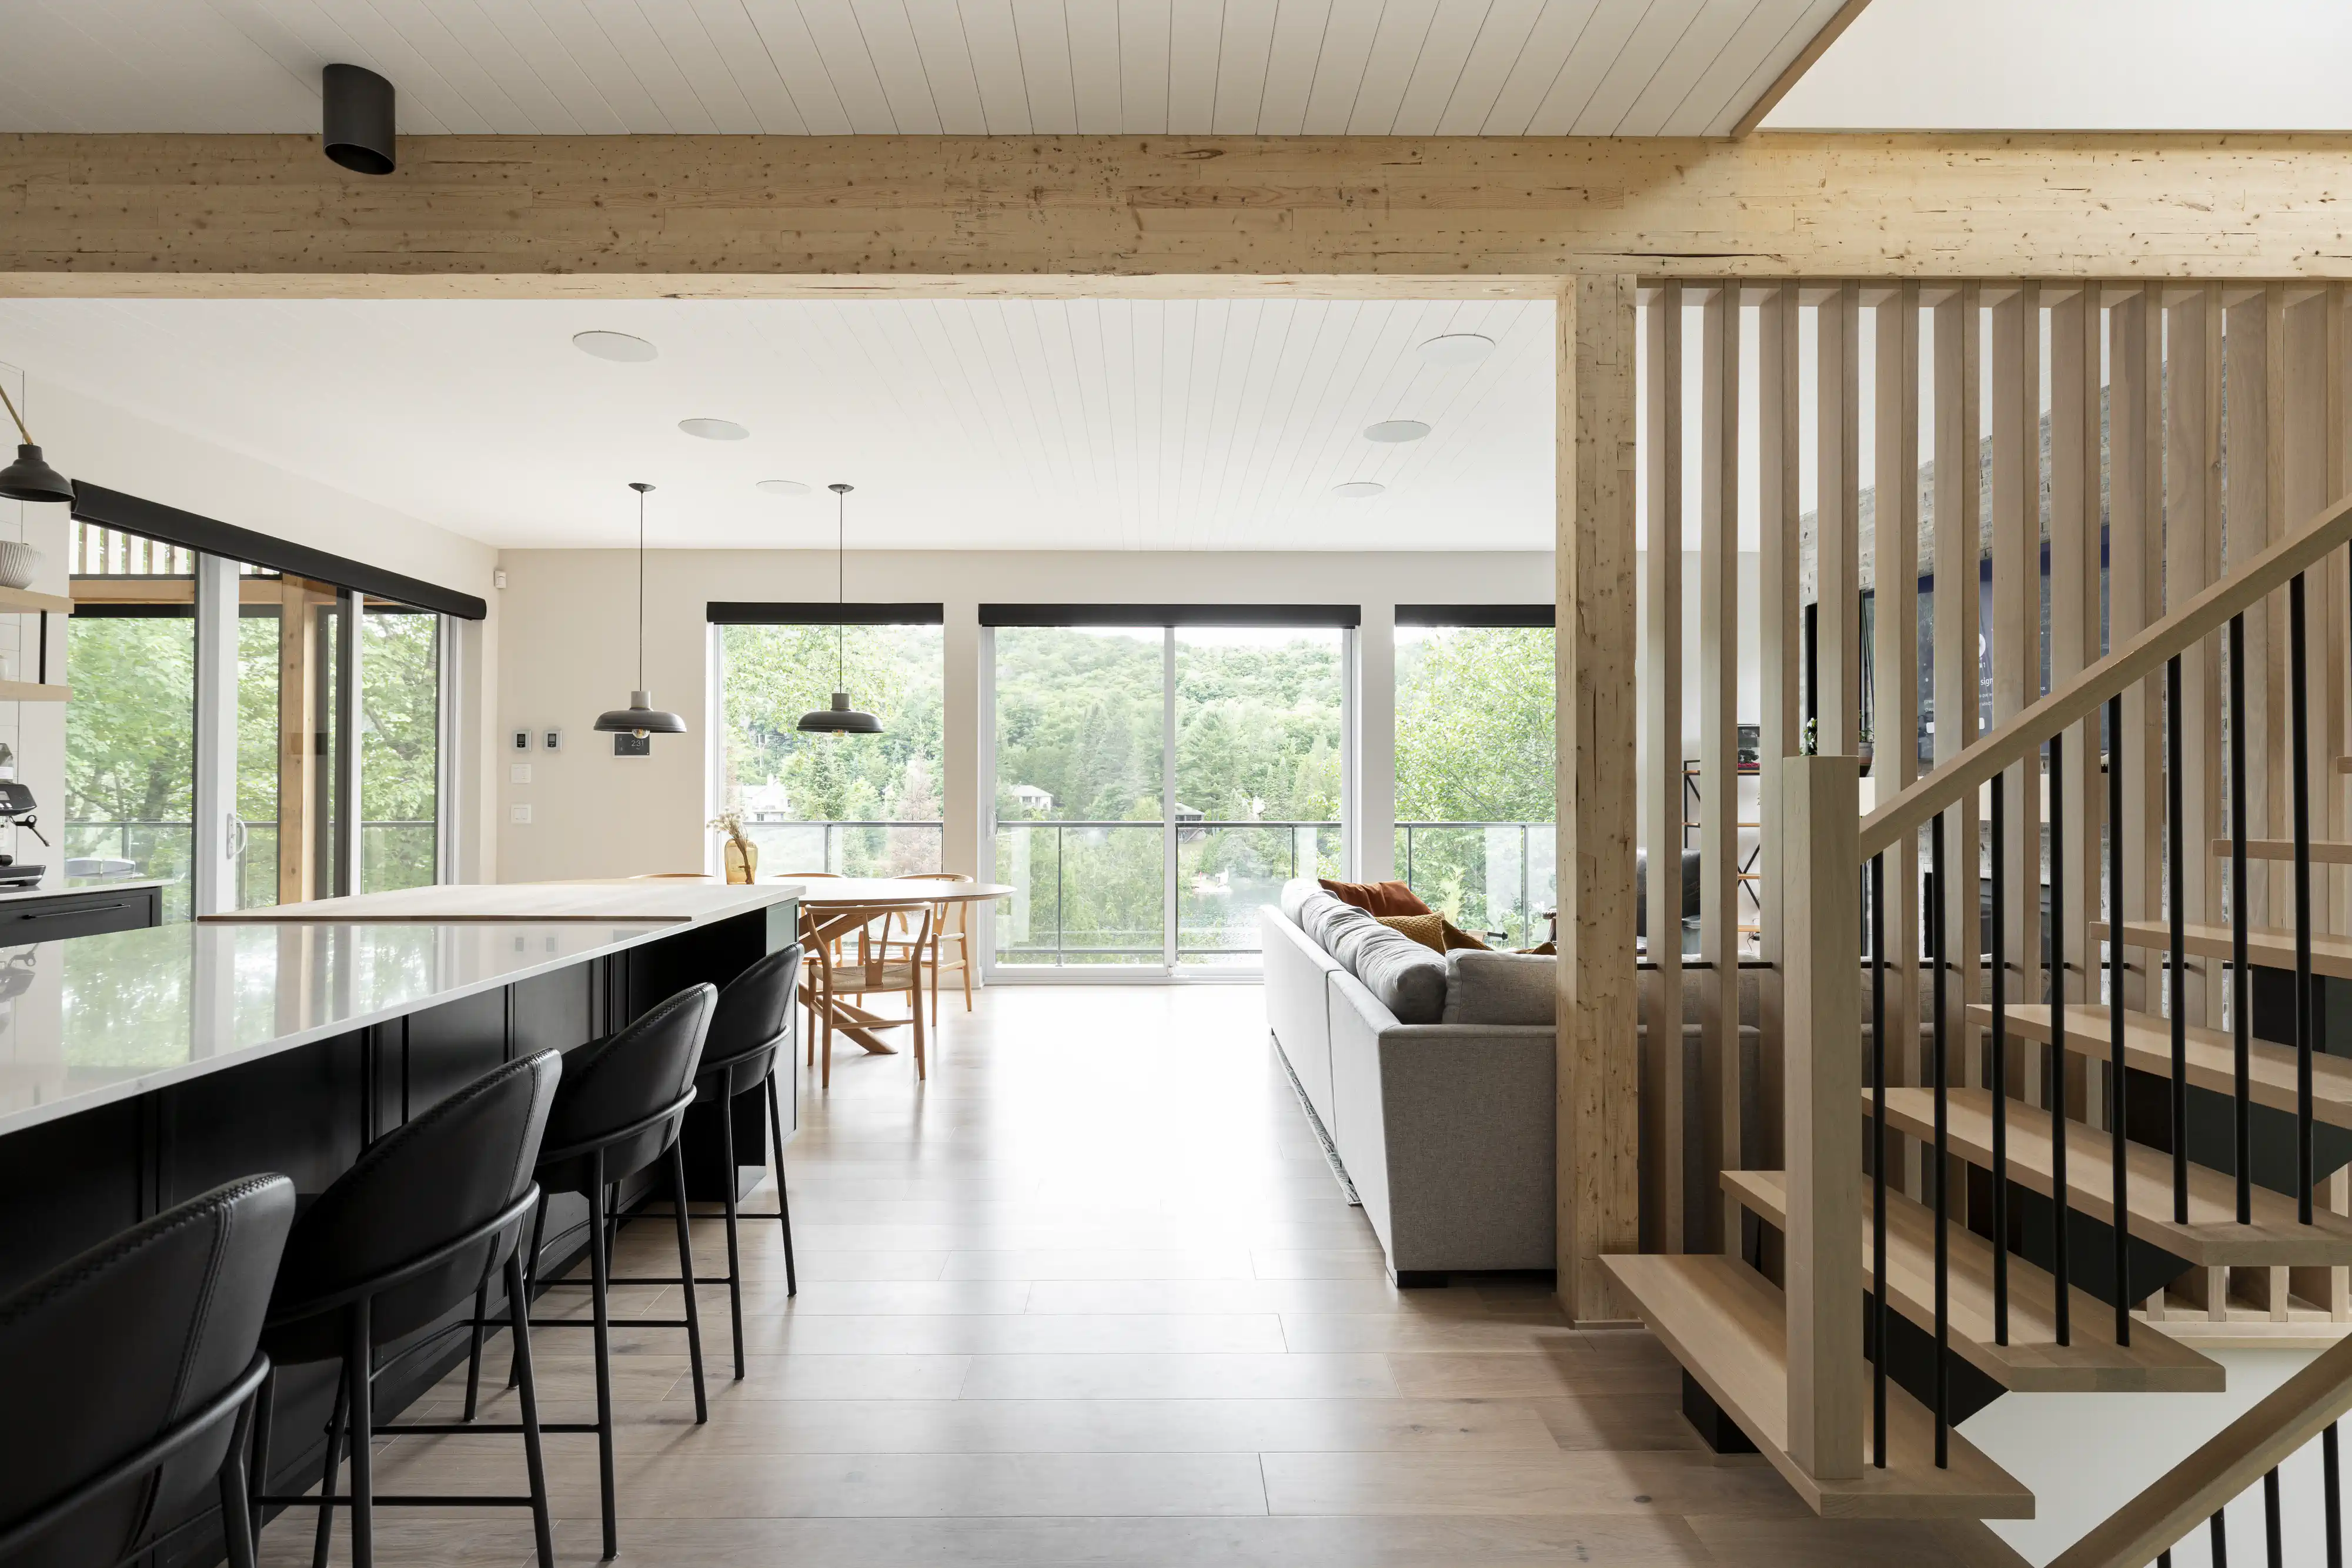 Une cuisine et un salon modernes avec une vue sur l'extérieur, intérieur signé Sarah Brown Design